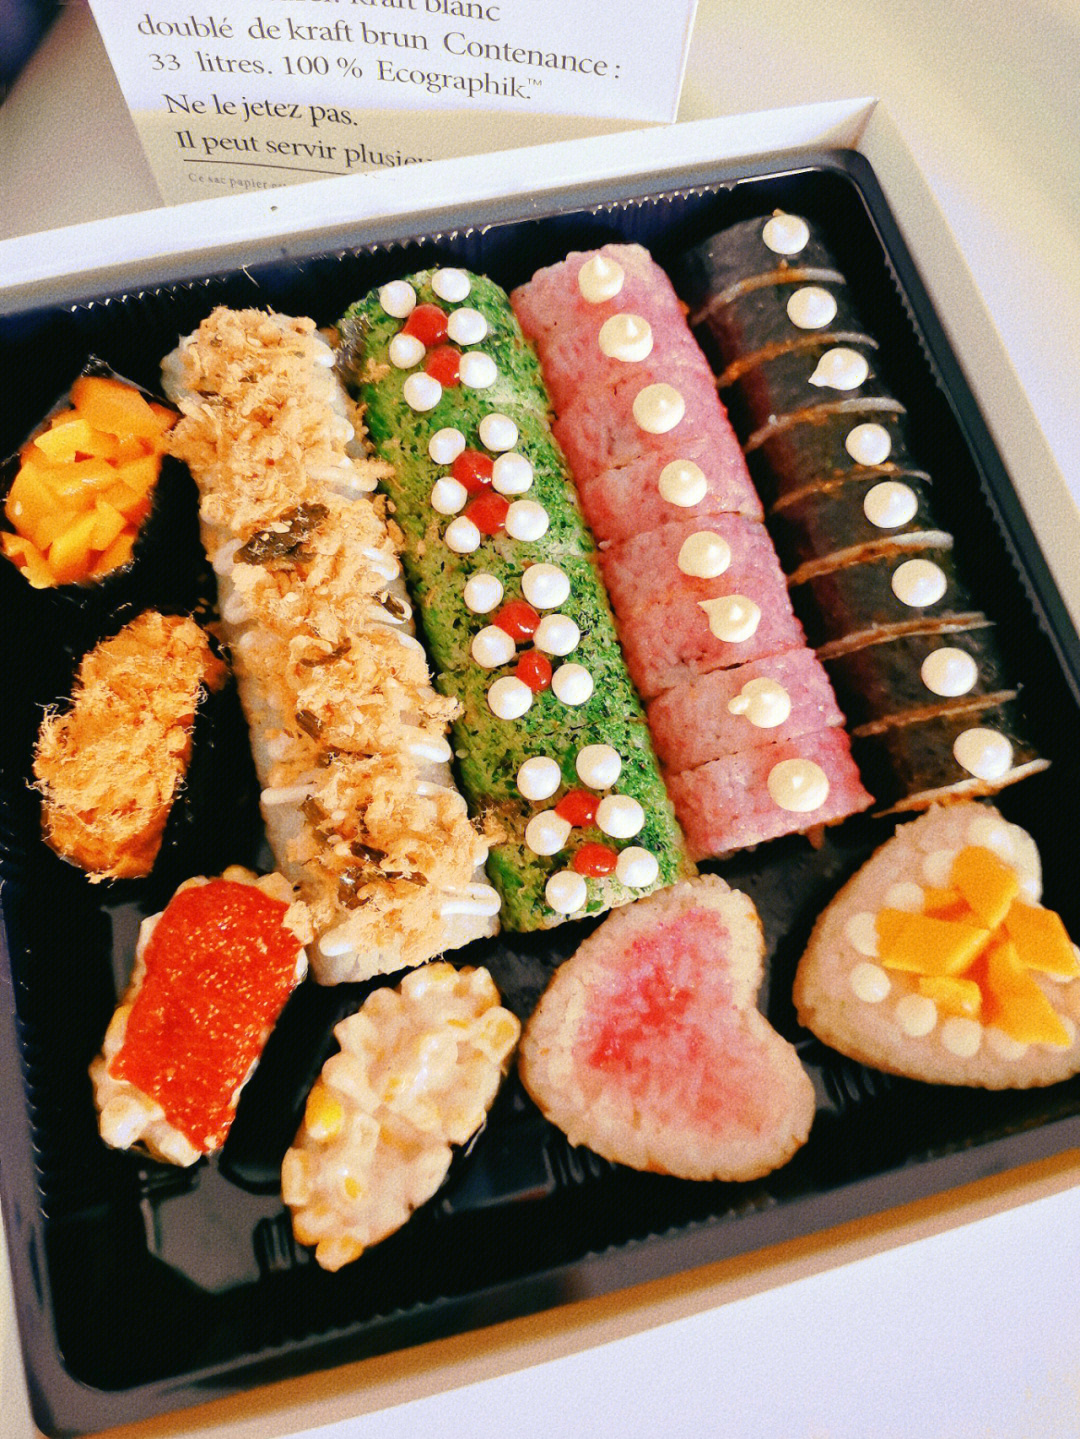 寿司拼盘 套餐图片